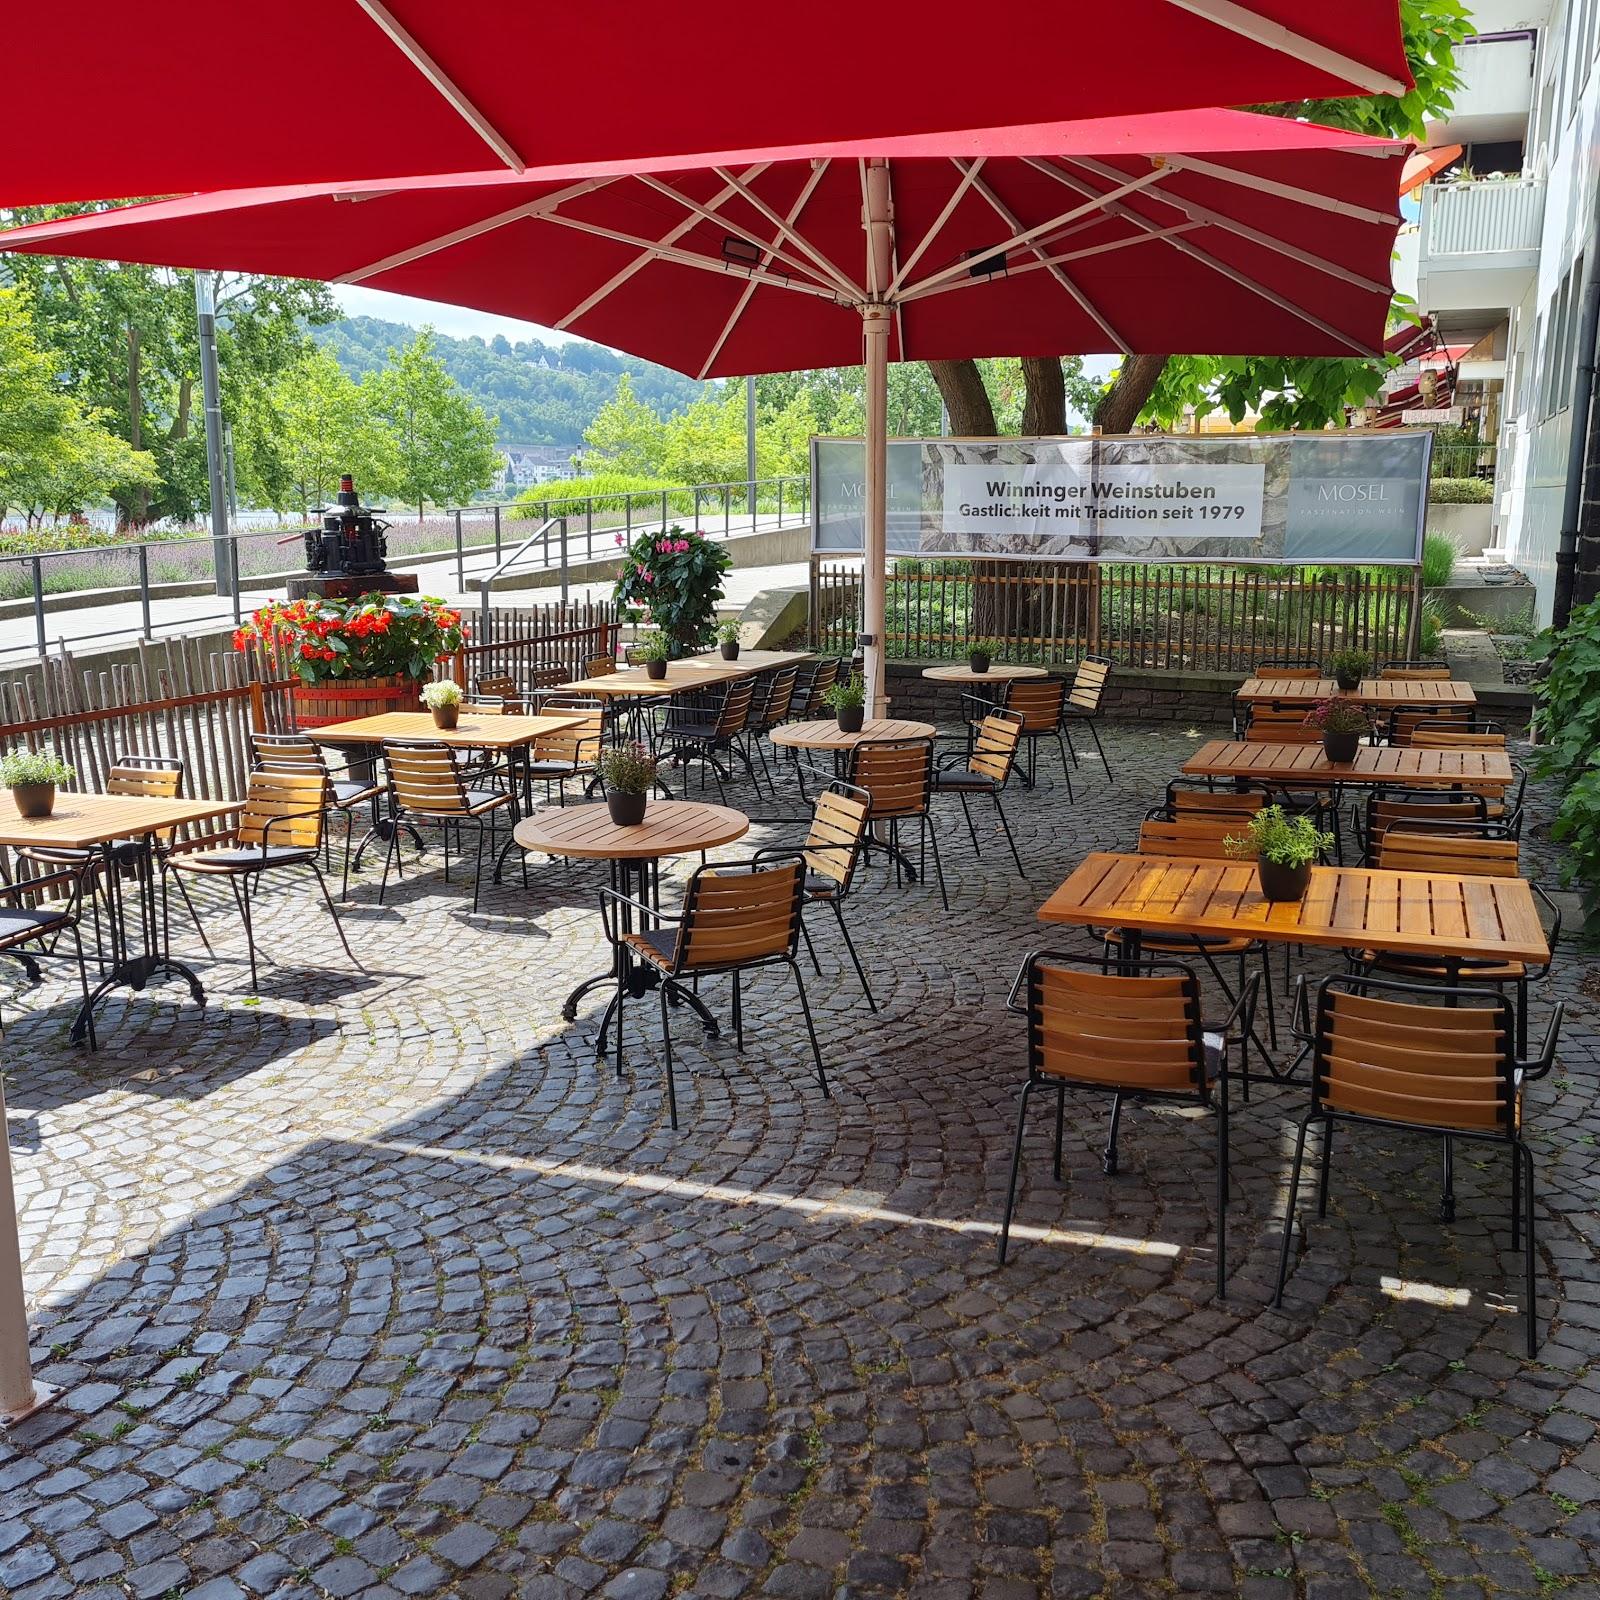 Restaurant "Winninger Weinstuben" in Koblenz